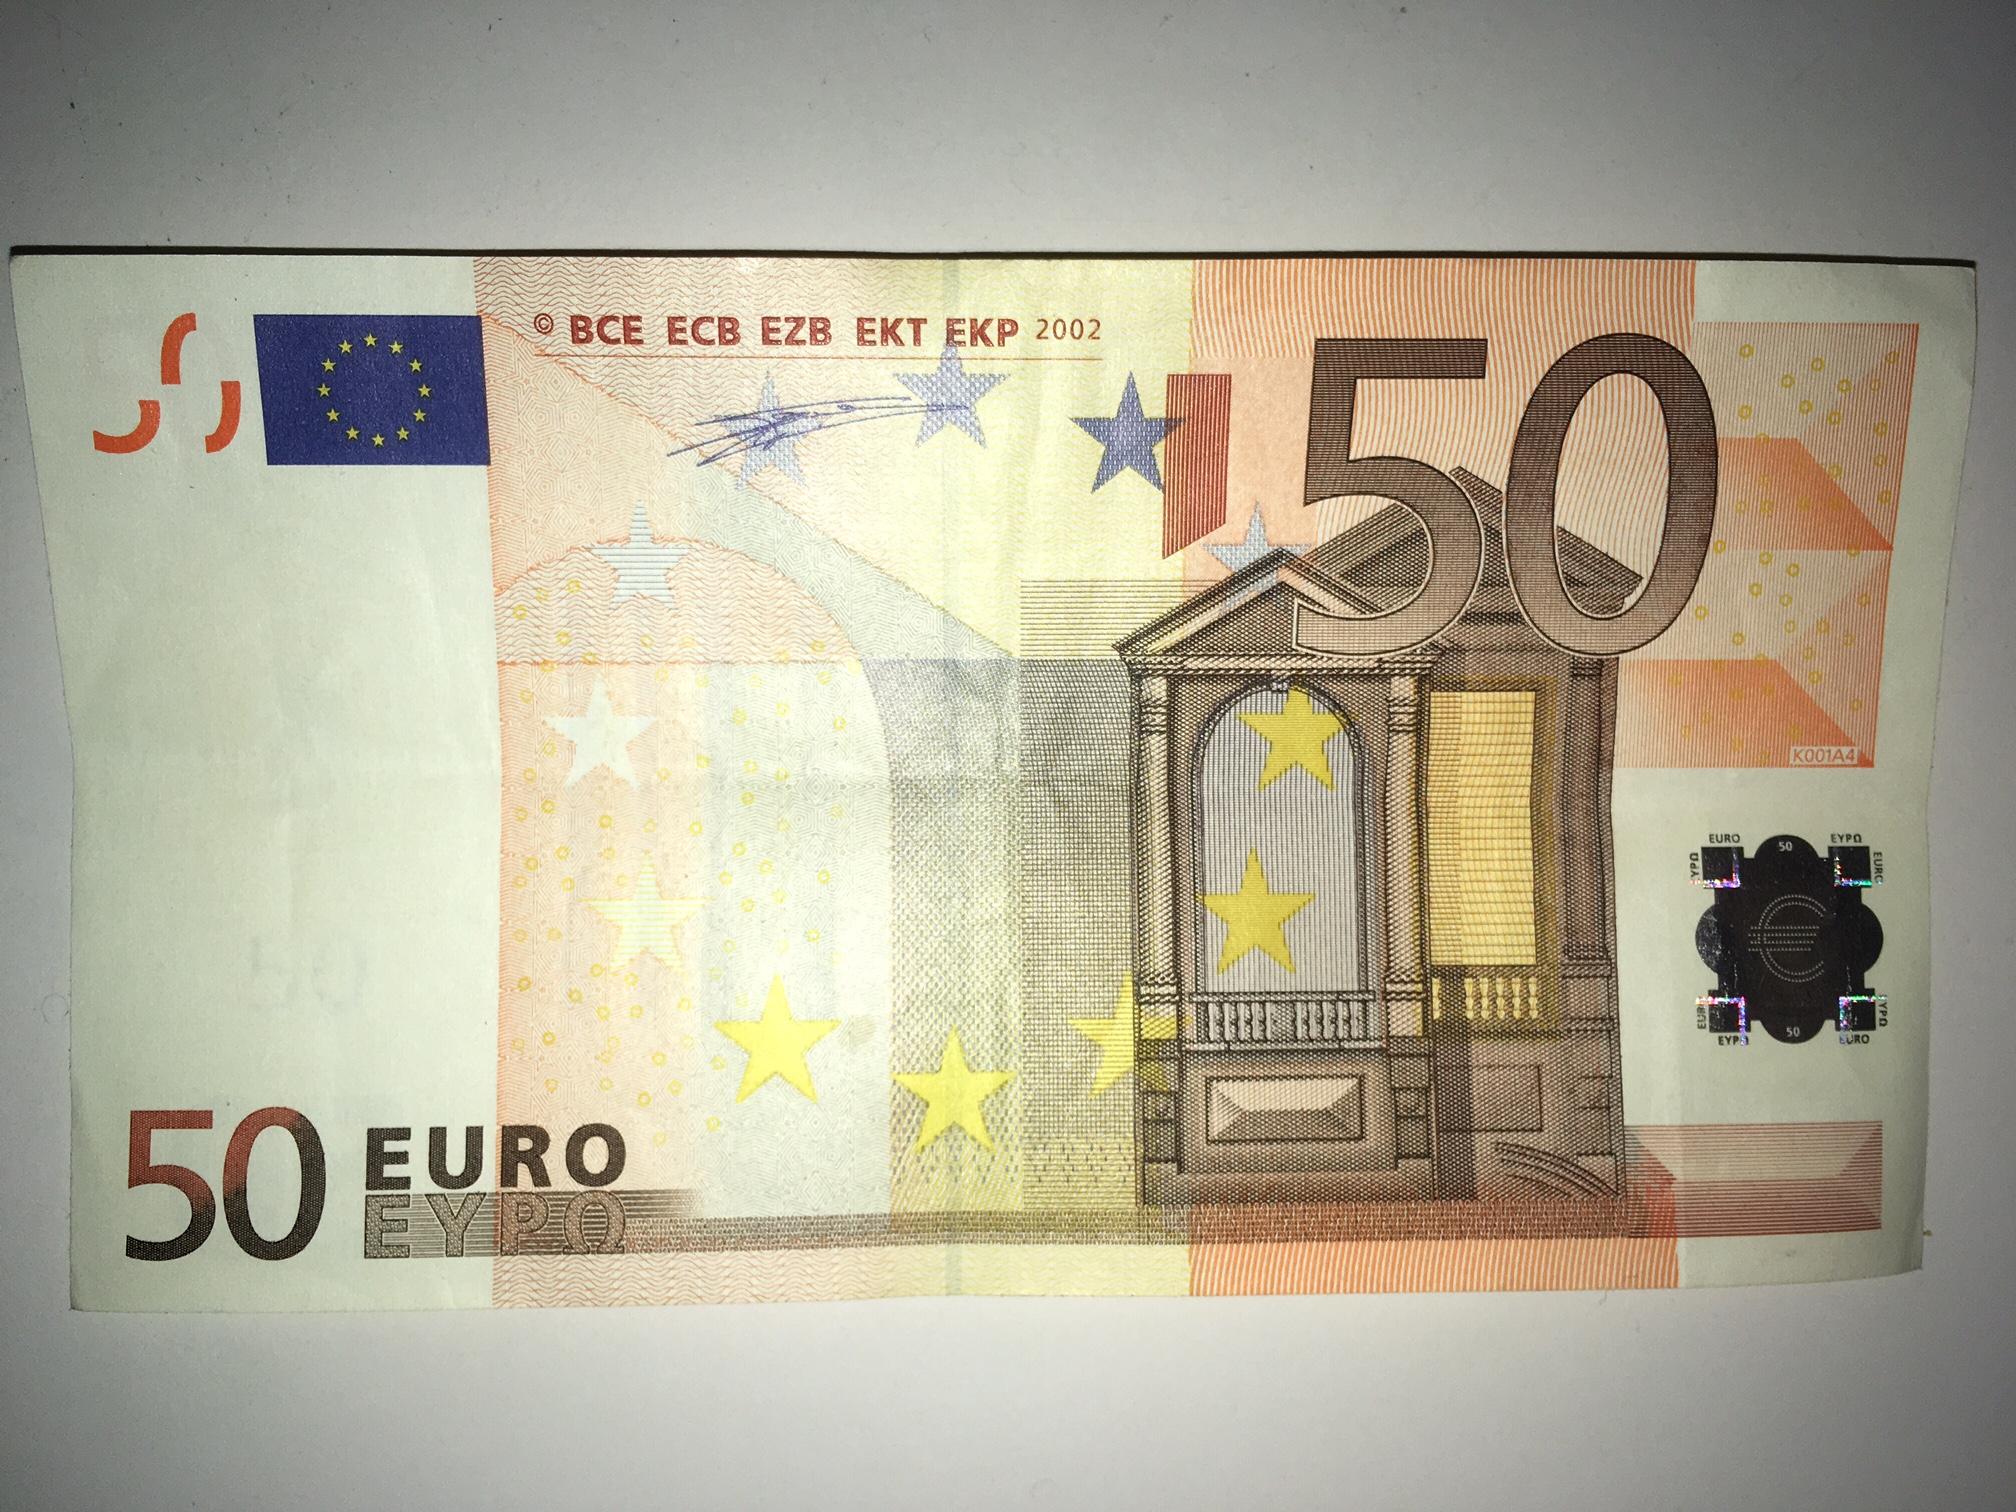 50 Евро купюра. 50 Евро 2002. 50 Евро купюра 2002. Купюра 50 евро 2002 года. Пятьдесят евро